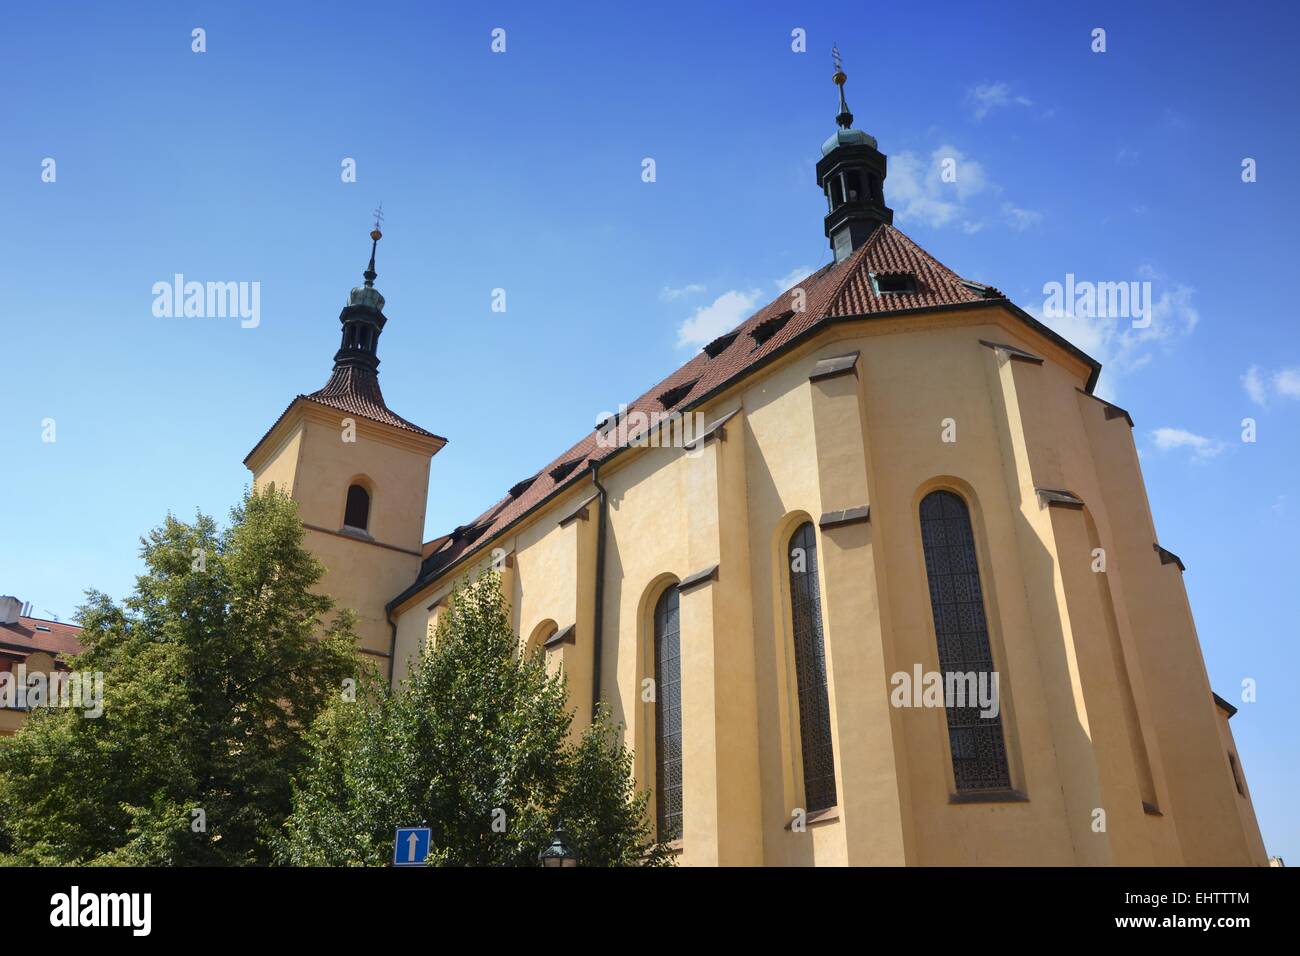 Una antigua iglesia en Praga Foto de stock